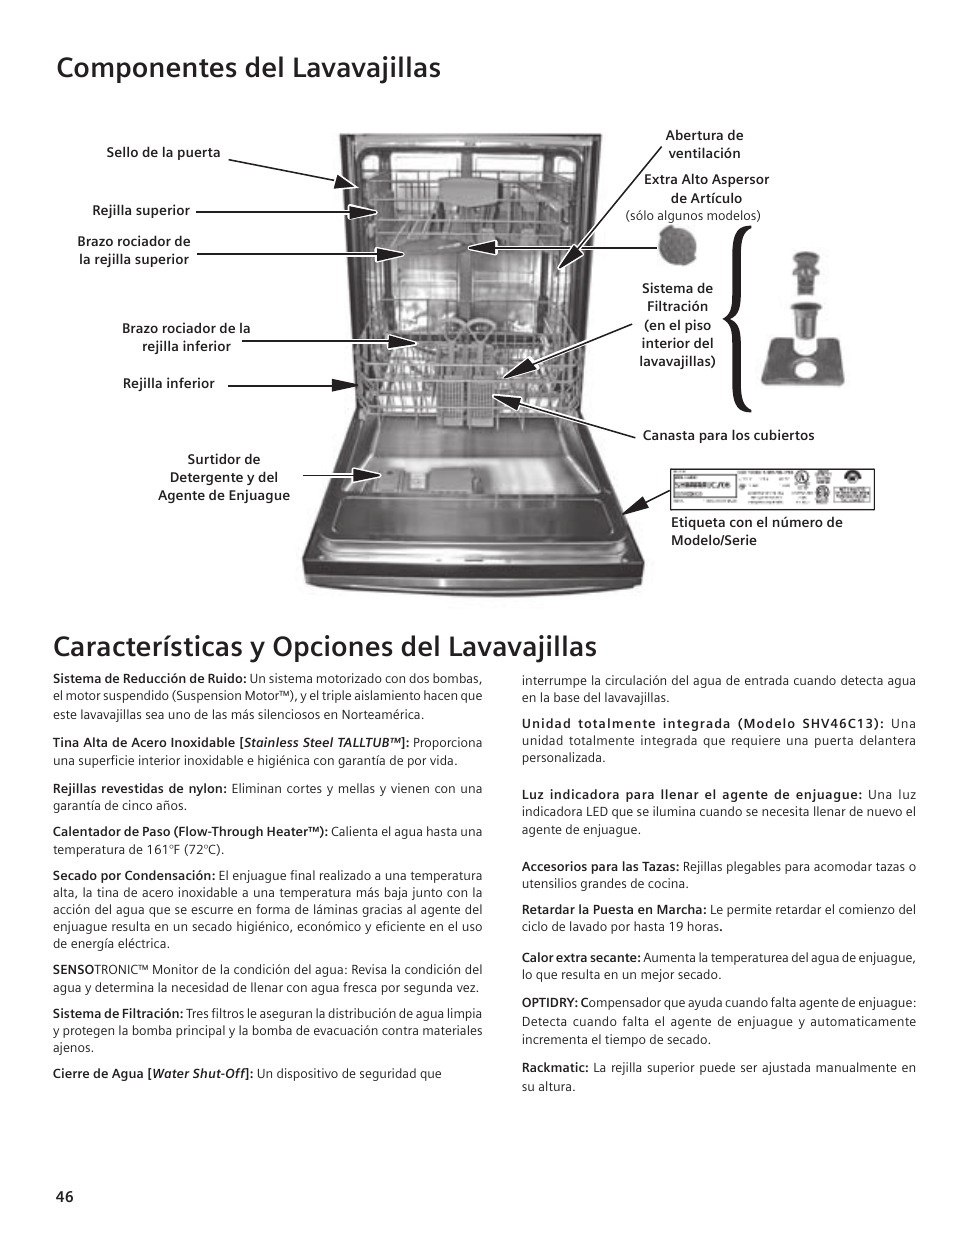 Componentes del lavavajillas, Características y opciones del lavavajillas |  Bosch SHE55C User Manual | Page 46 / 64 | Original mode